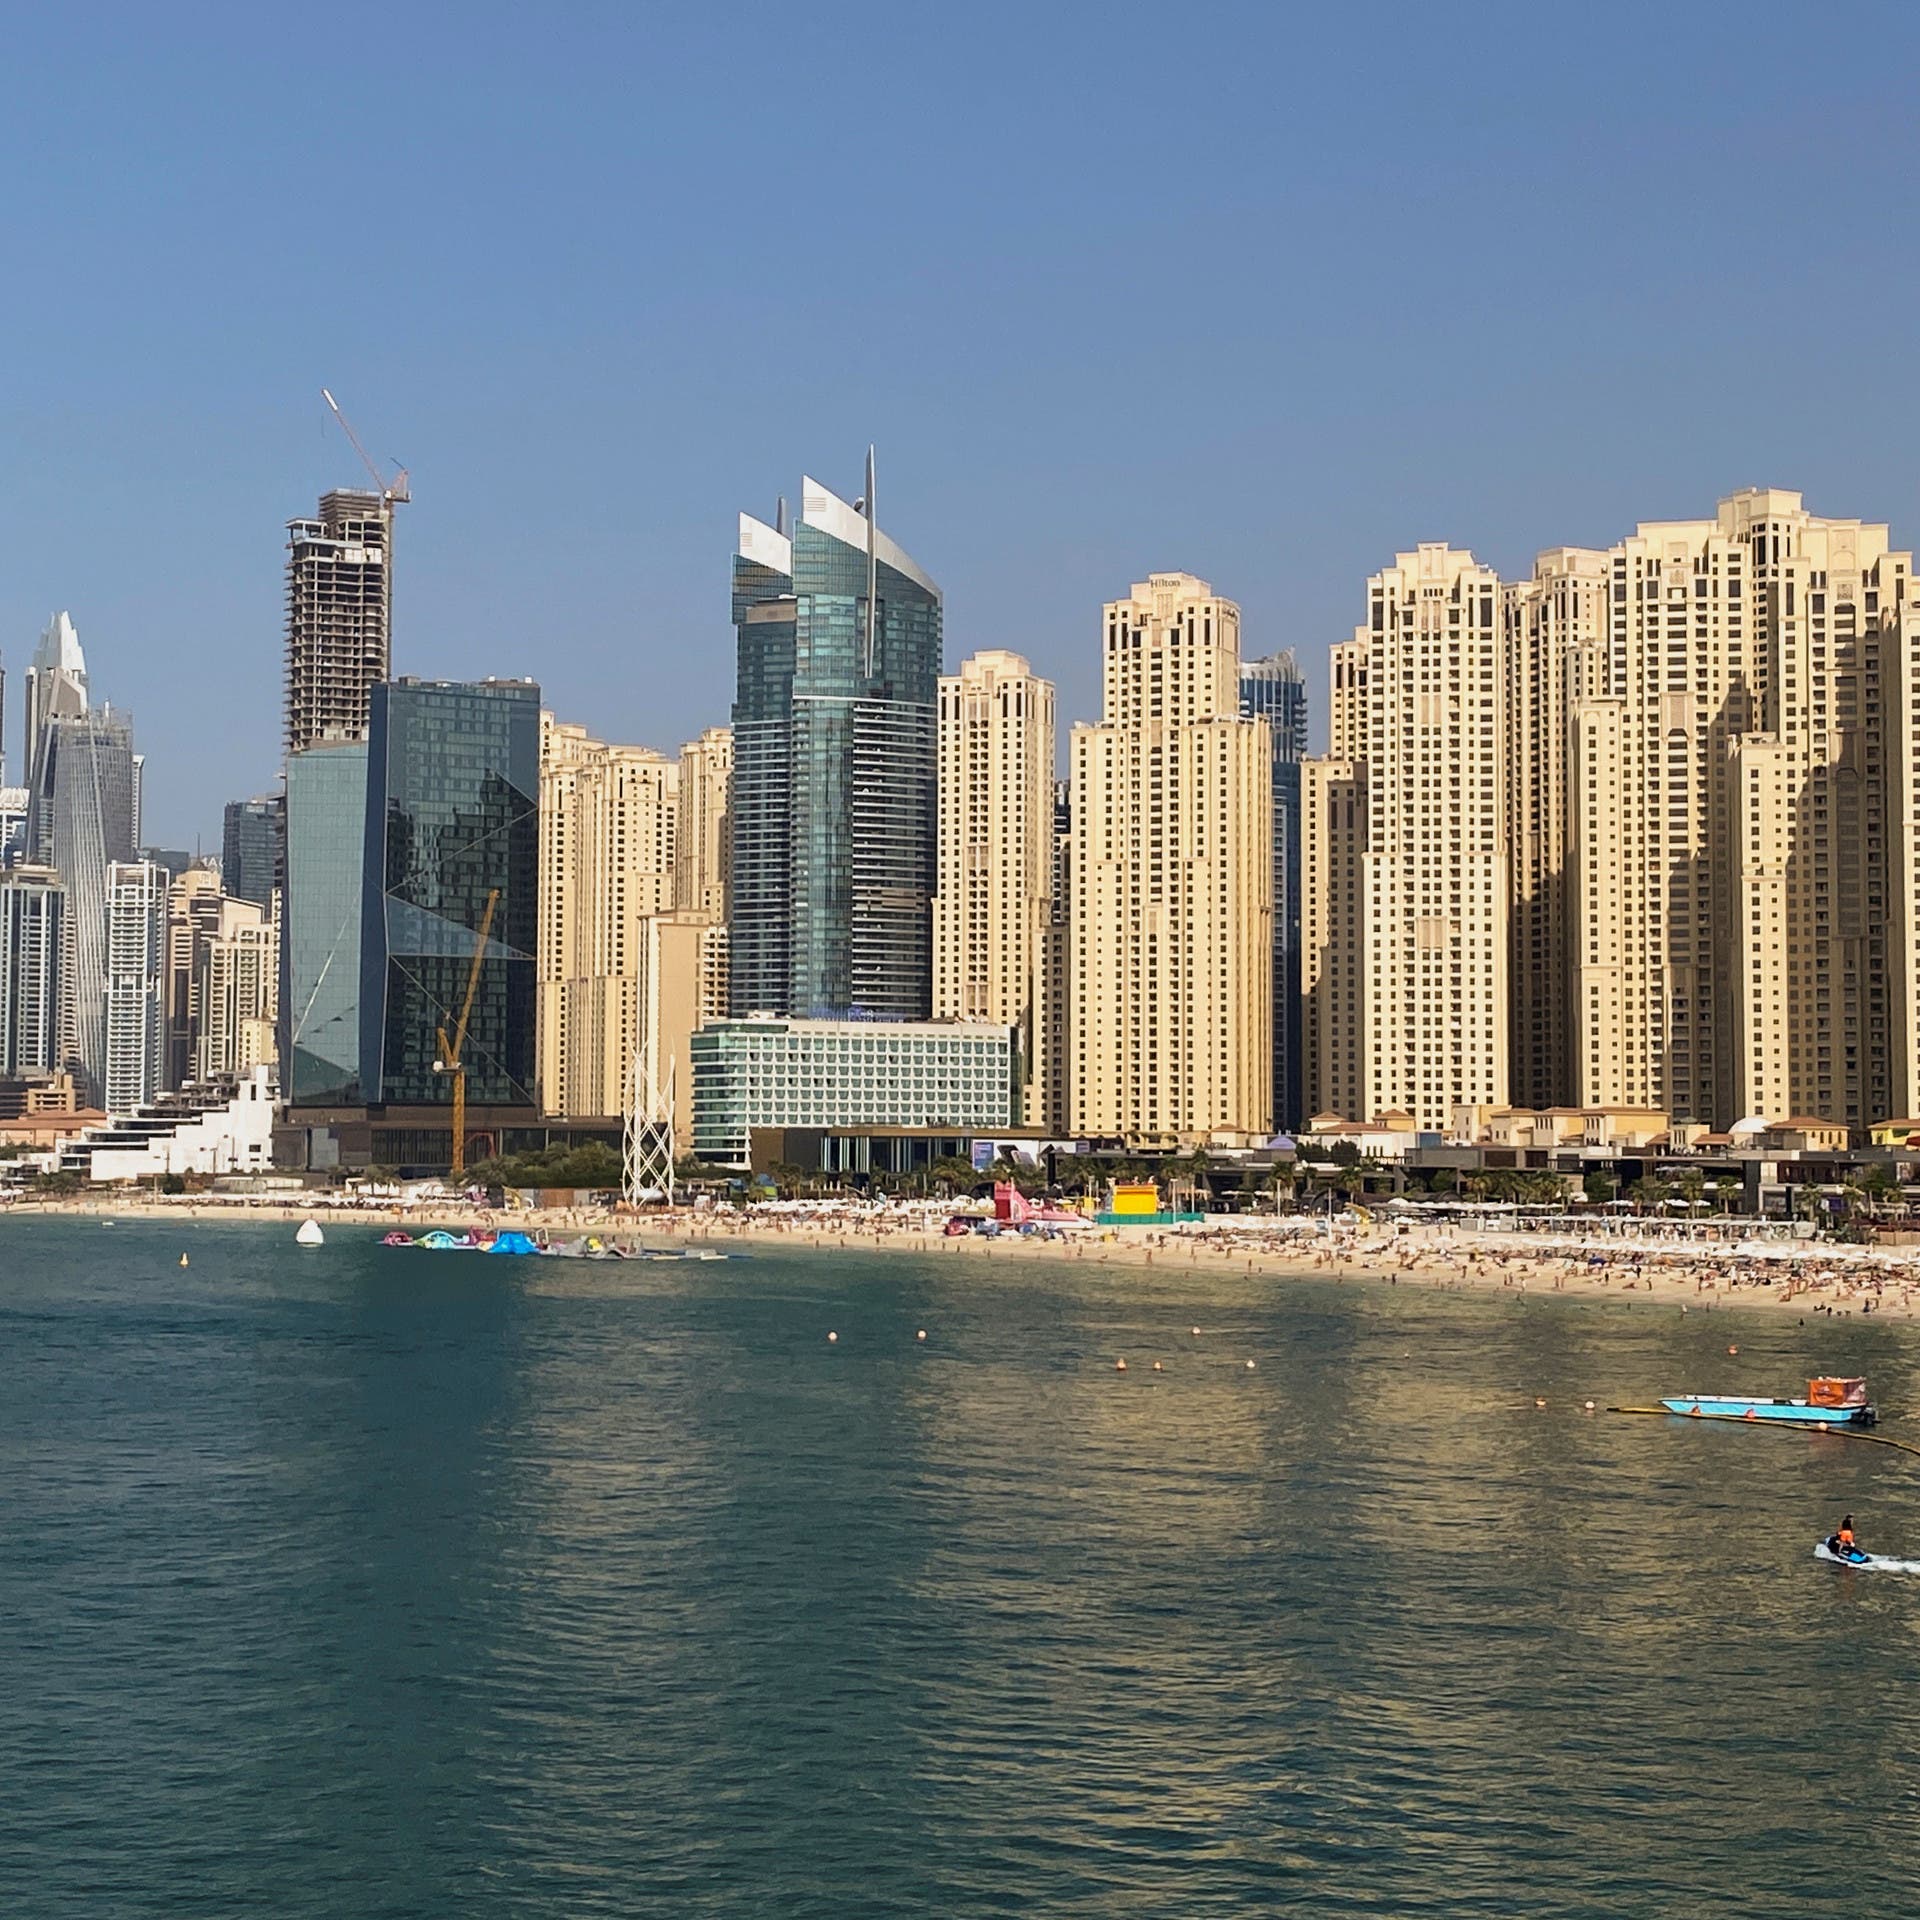 بنوك الإمارات تضخ 100 مليار درهم لتمويل شراء العقارات في دبي خلال 9 أشهر